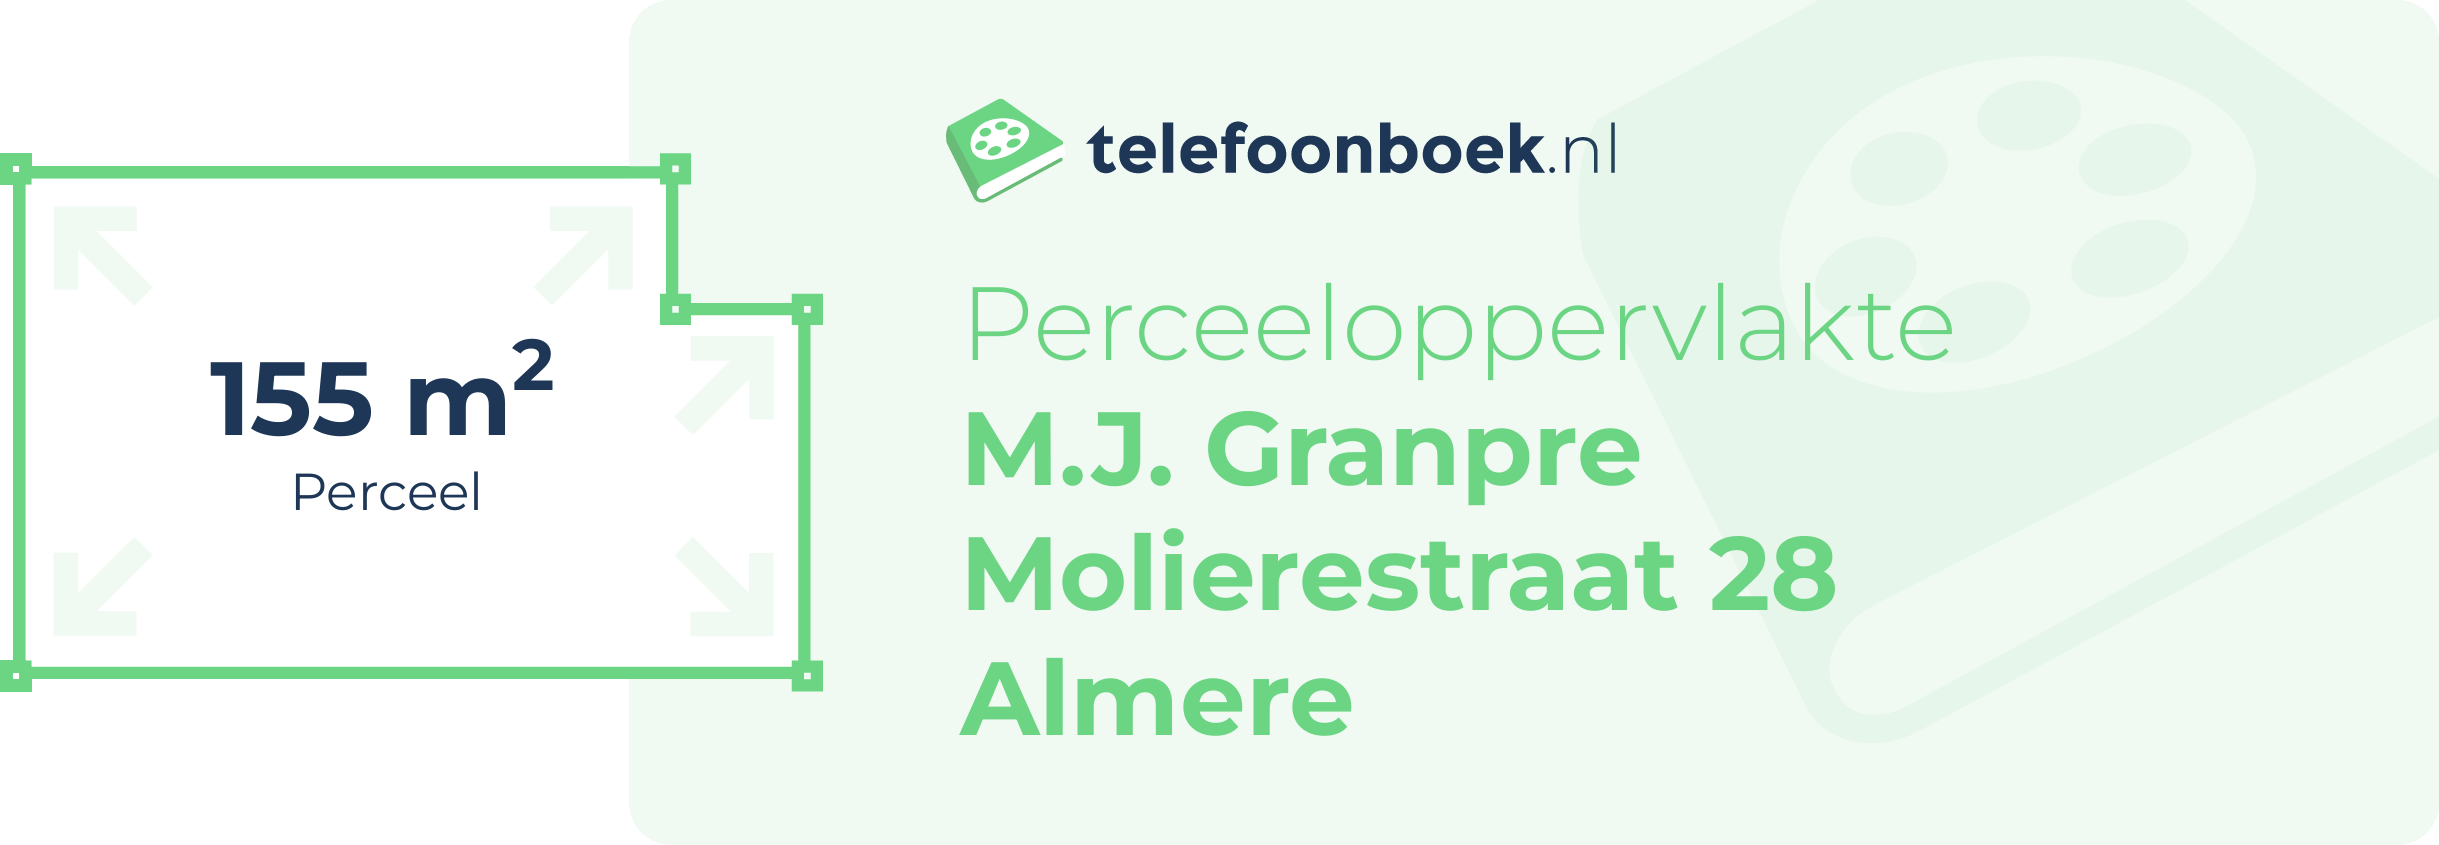 Perceeloppervlakte M.J. Granpre Molierestraat 28 Almere